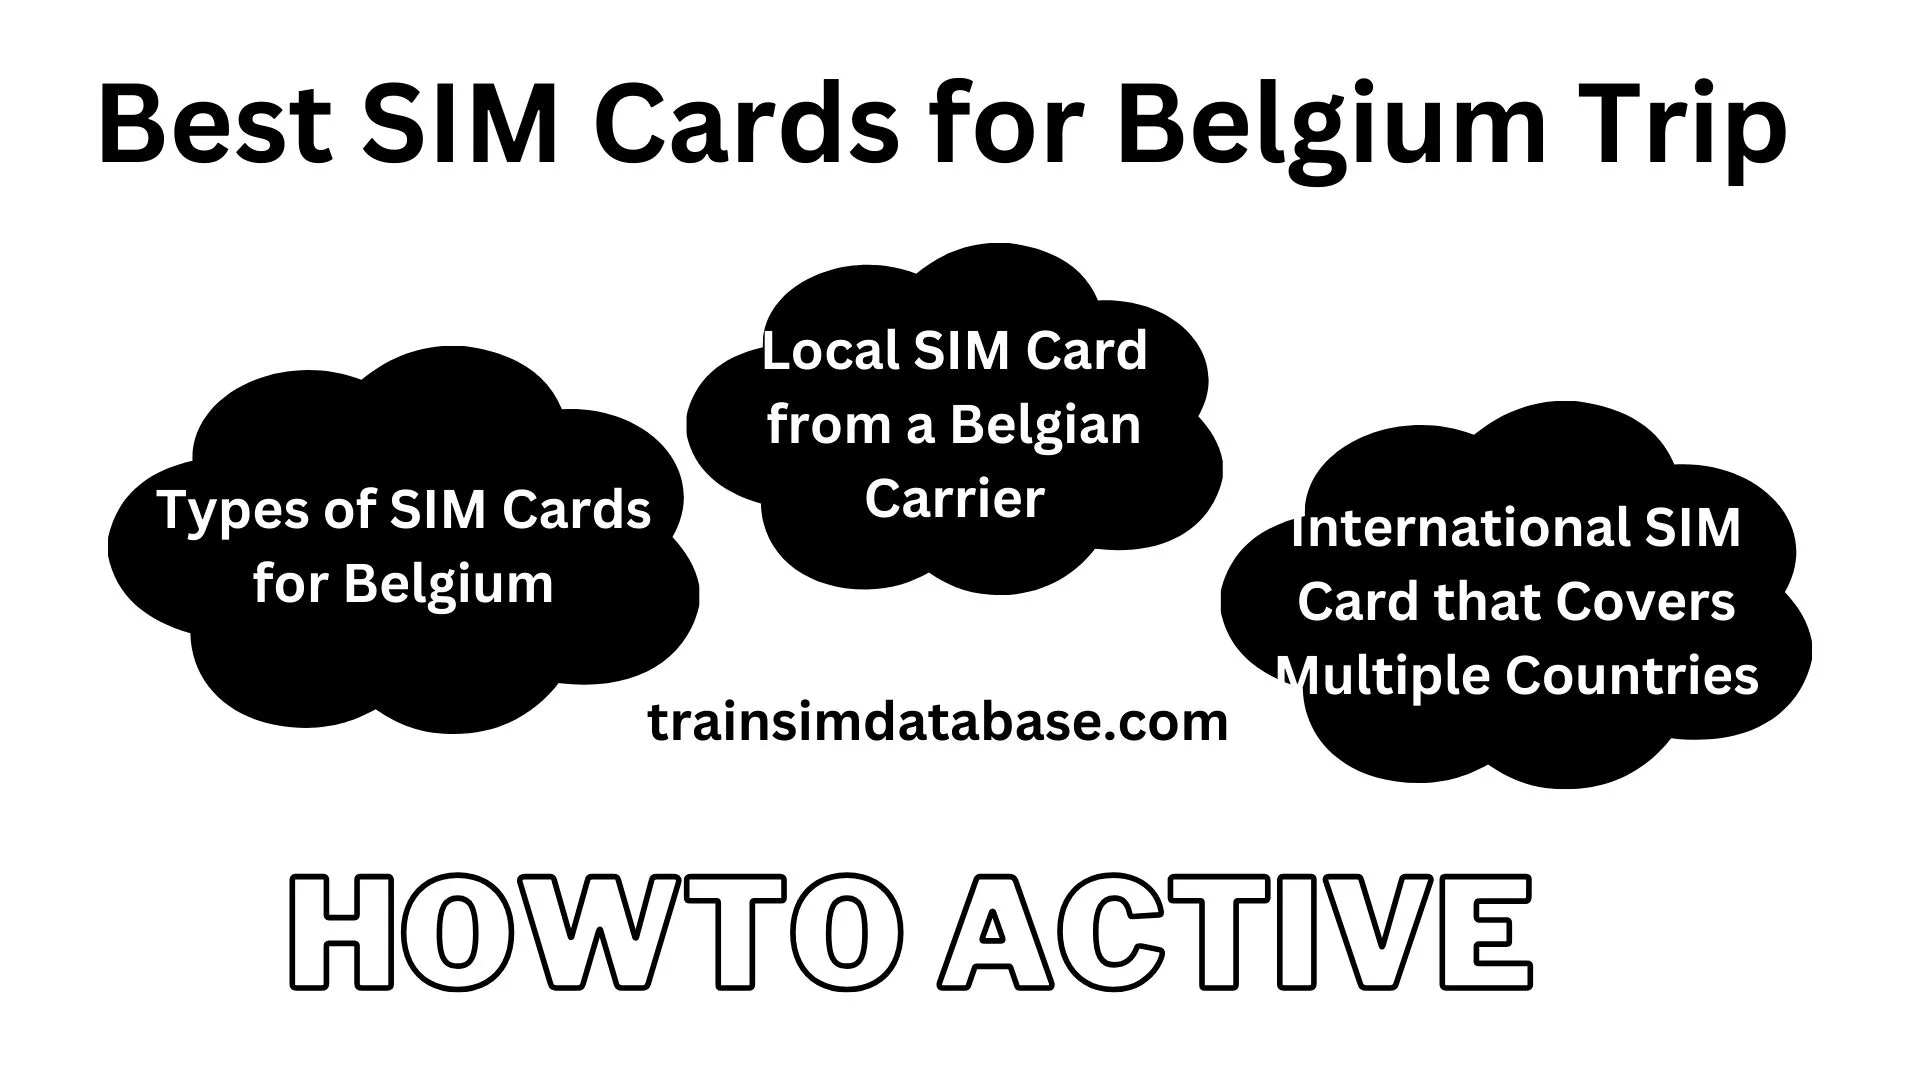 Best SIM Cards for Belgium Trip